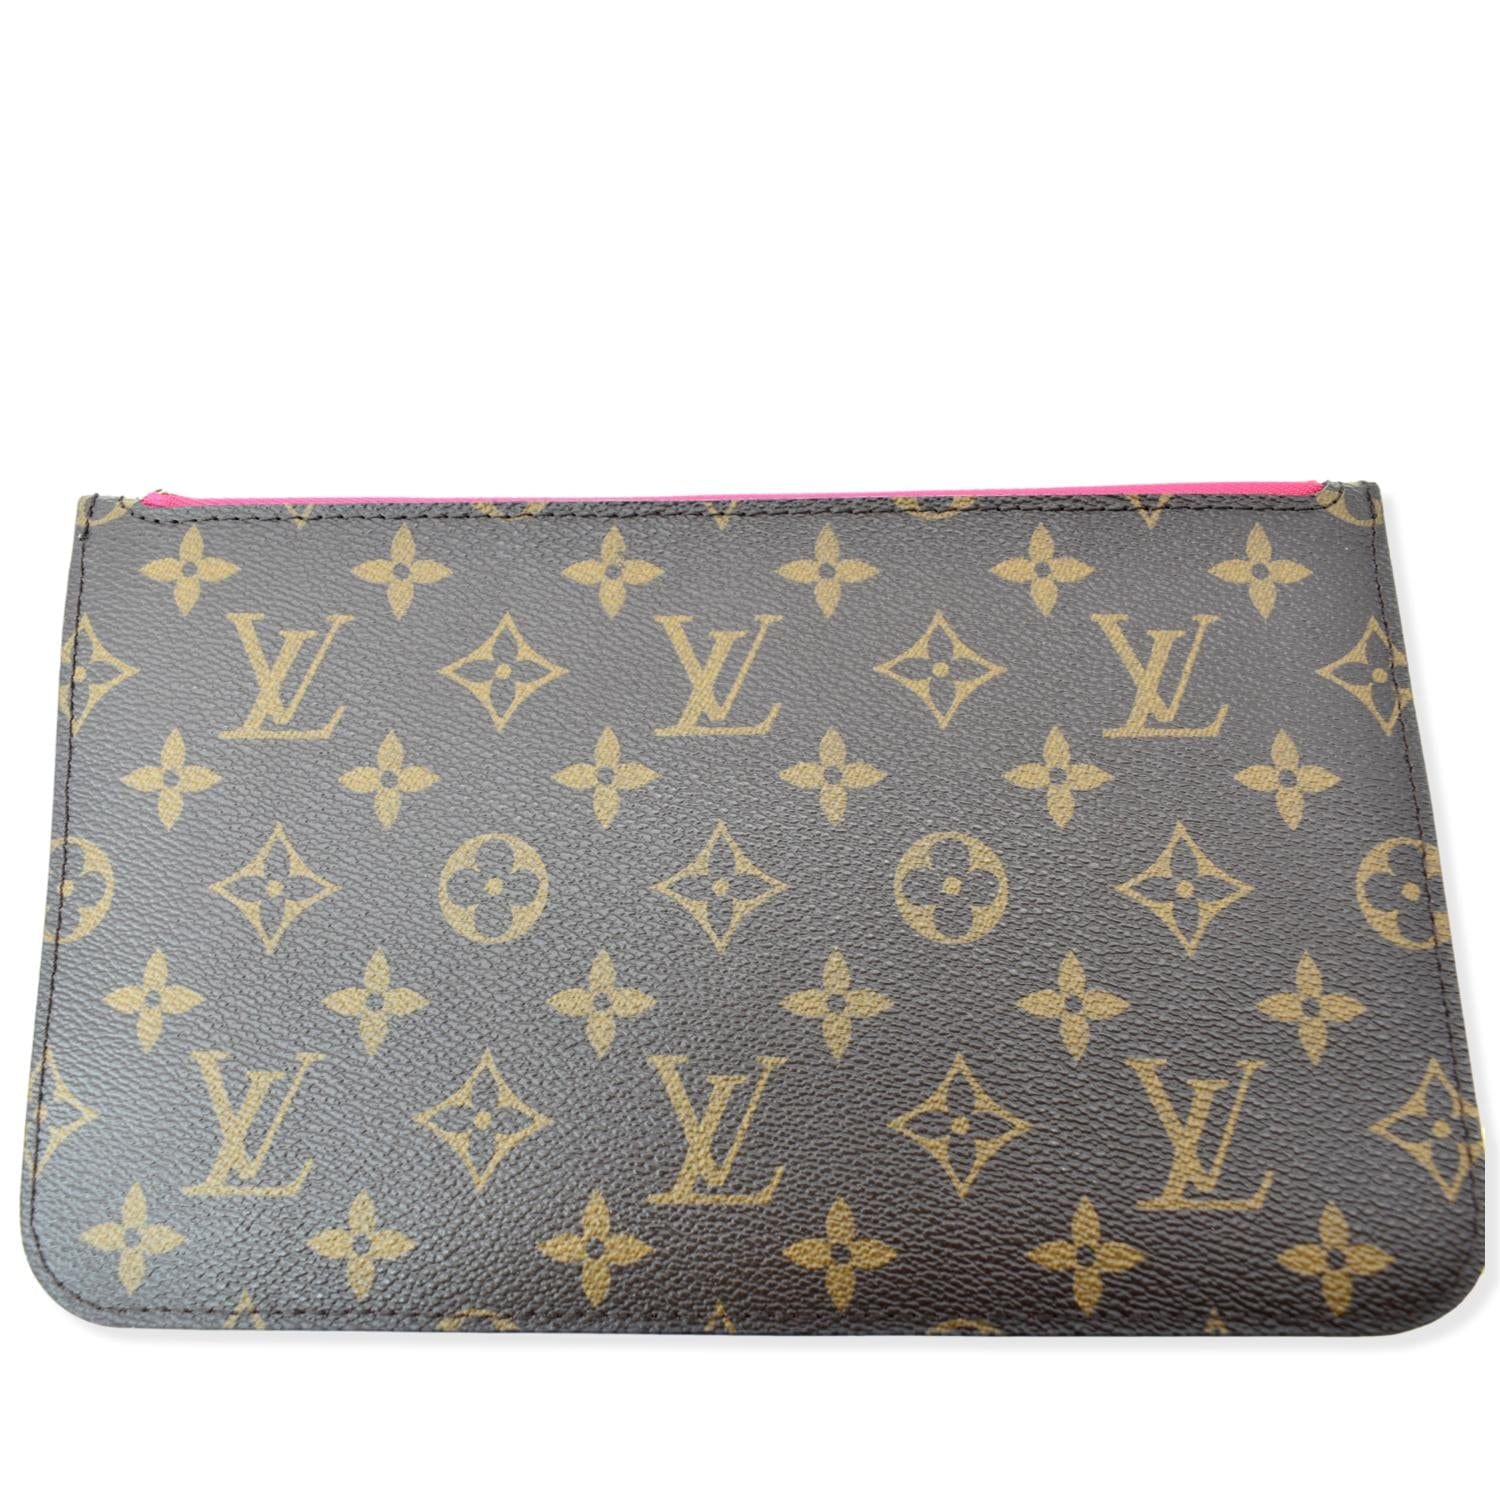 Authentic Louis Vuitton Monogram Neverfull Pouch Purse Clutch Bag